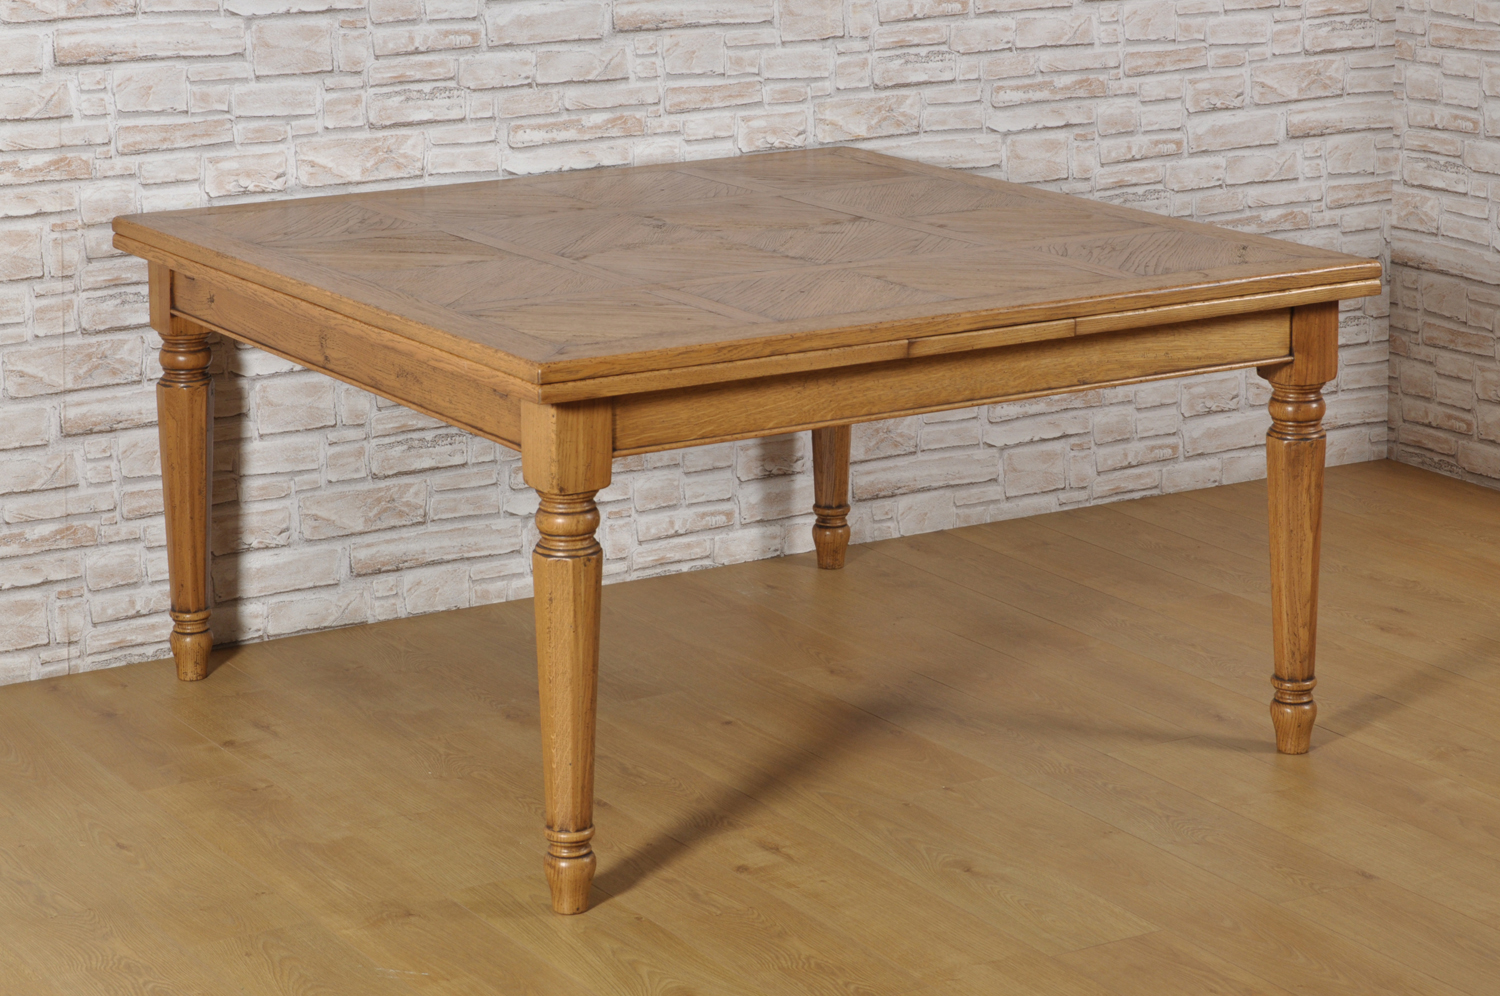 tavolo quadrato in stile Luigi XVI allungabile di grandi misure intarsiato in rovere massello con disegni geometrici a parquet riprodotto in stile classico